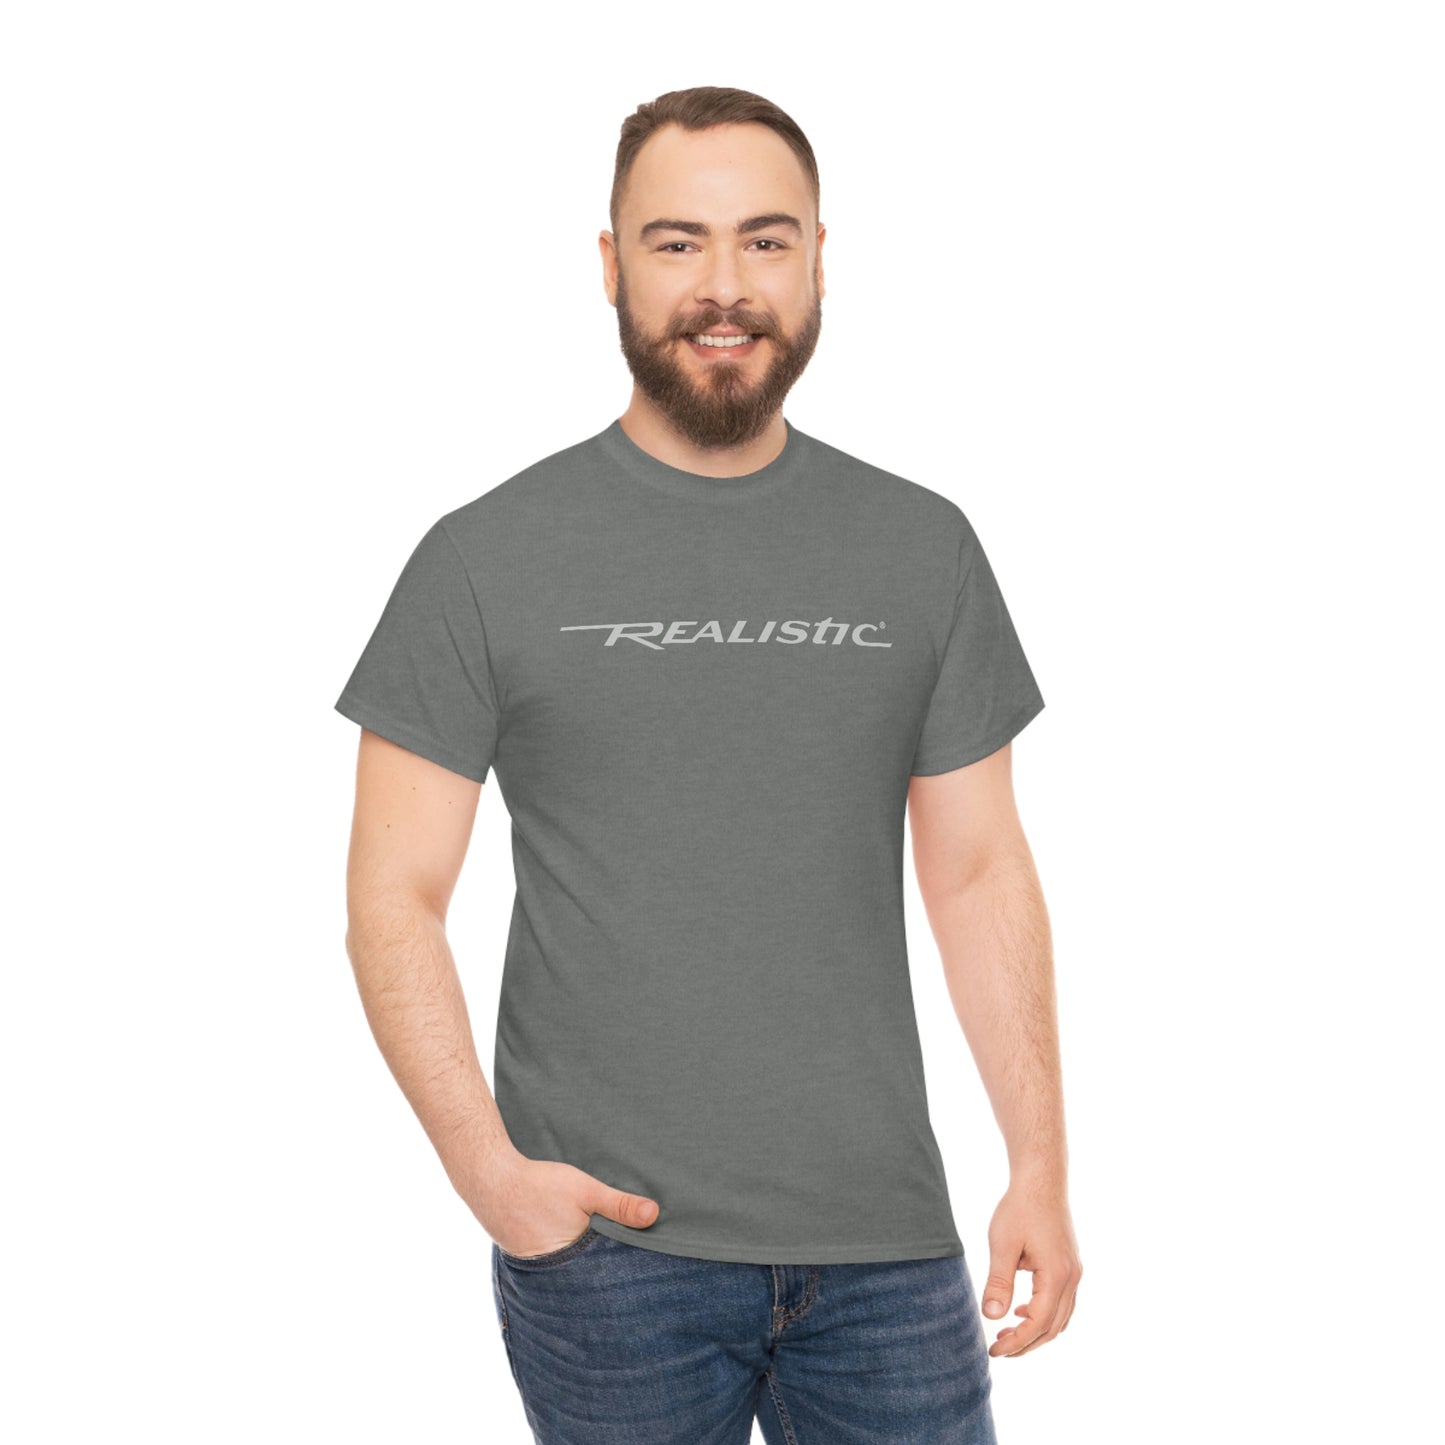 Realistic T-Shirt